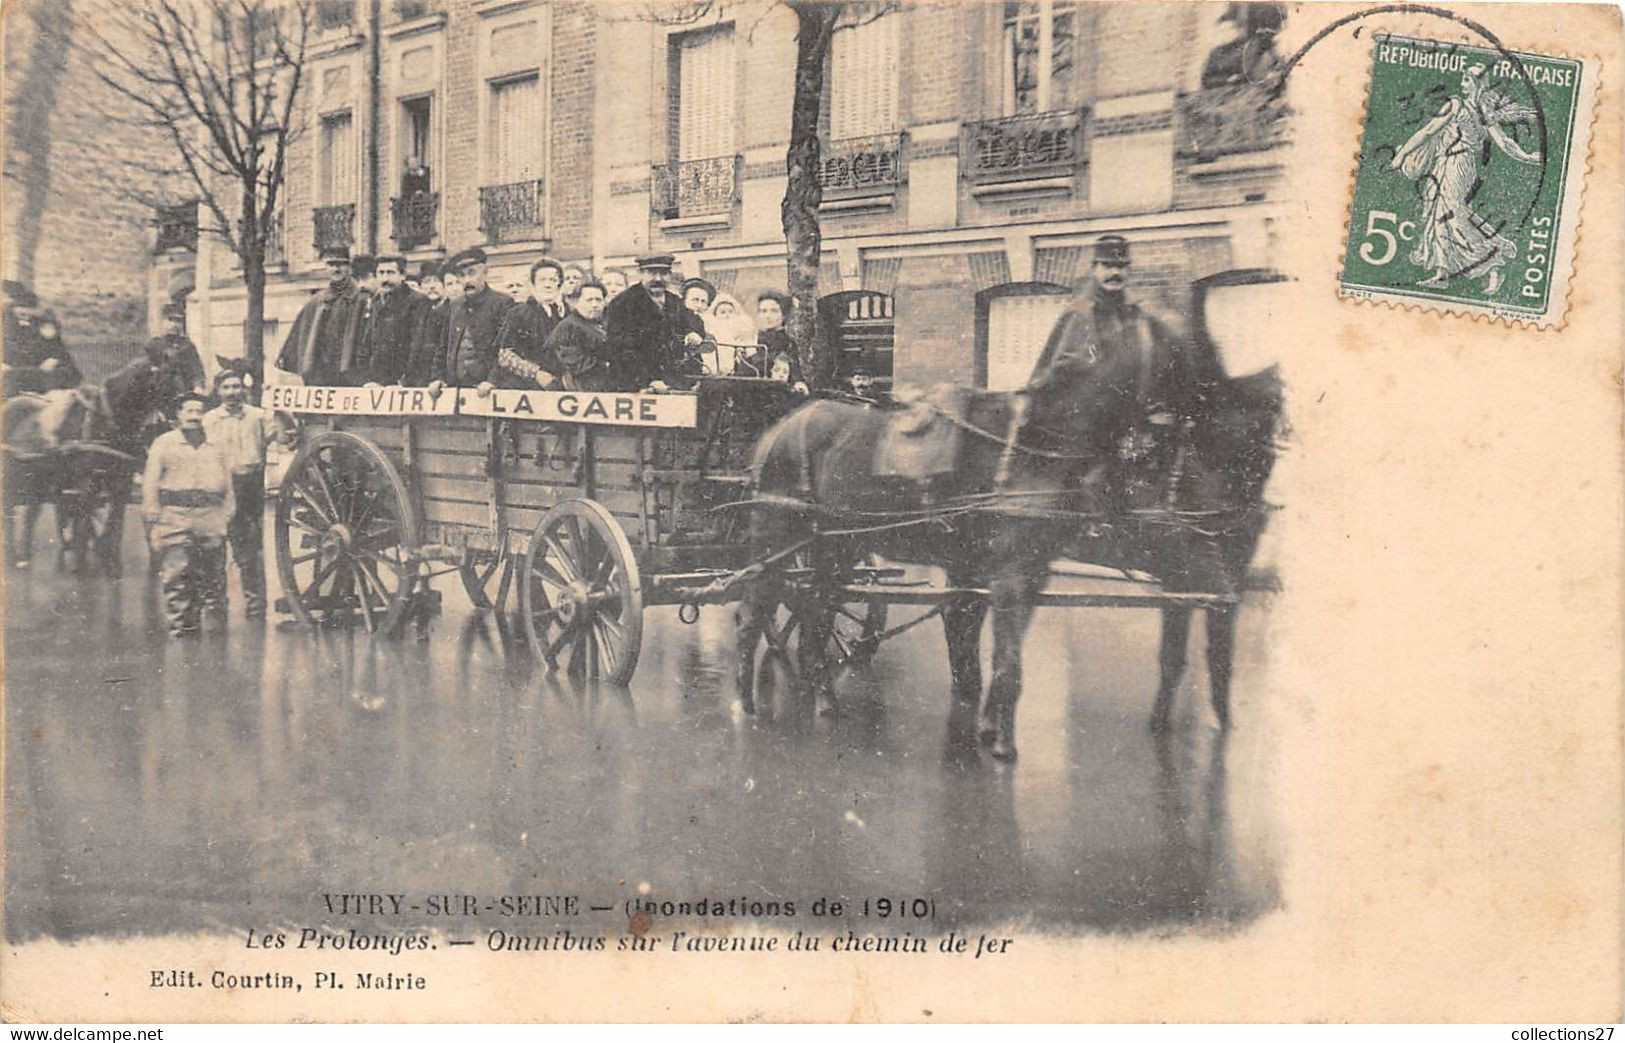 94-VITRY-SUR-SEINE- INONDATION 1910, LES PROLONGES, OMNIBUS SUR L'AVENUE DU CHEMIN DE FER - Vitry Sur Seine